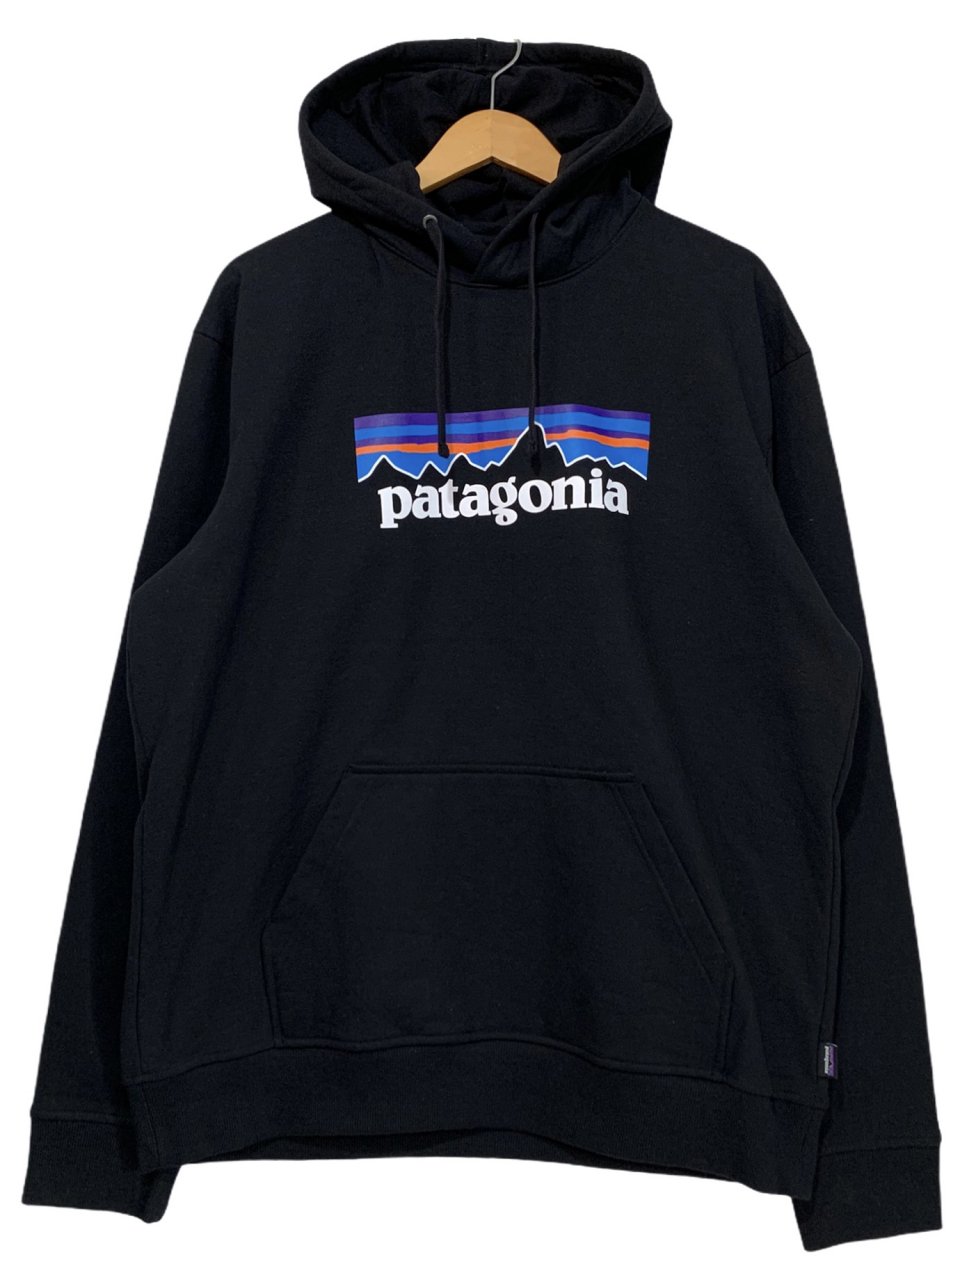 新品 19年製 patagonia P-6 Logo Uprisal Hoody 黒 パタゴニア プルオーバー パーカー P-6ロゴ  アップライザルフーディ パーカー 39539 FA19 - NEWJOKE ONLINE STORE